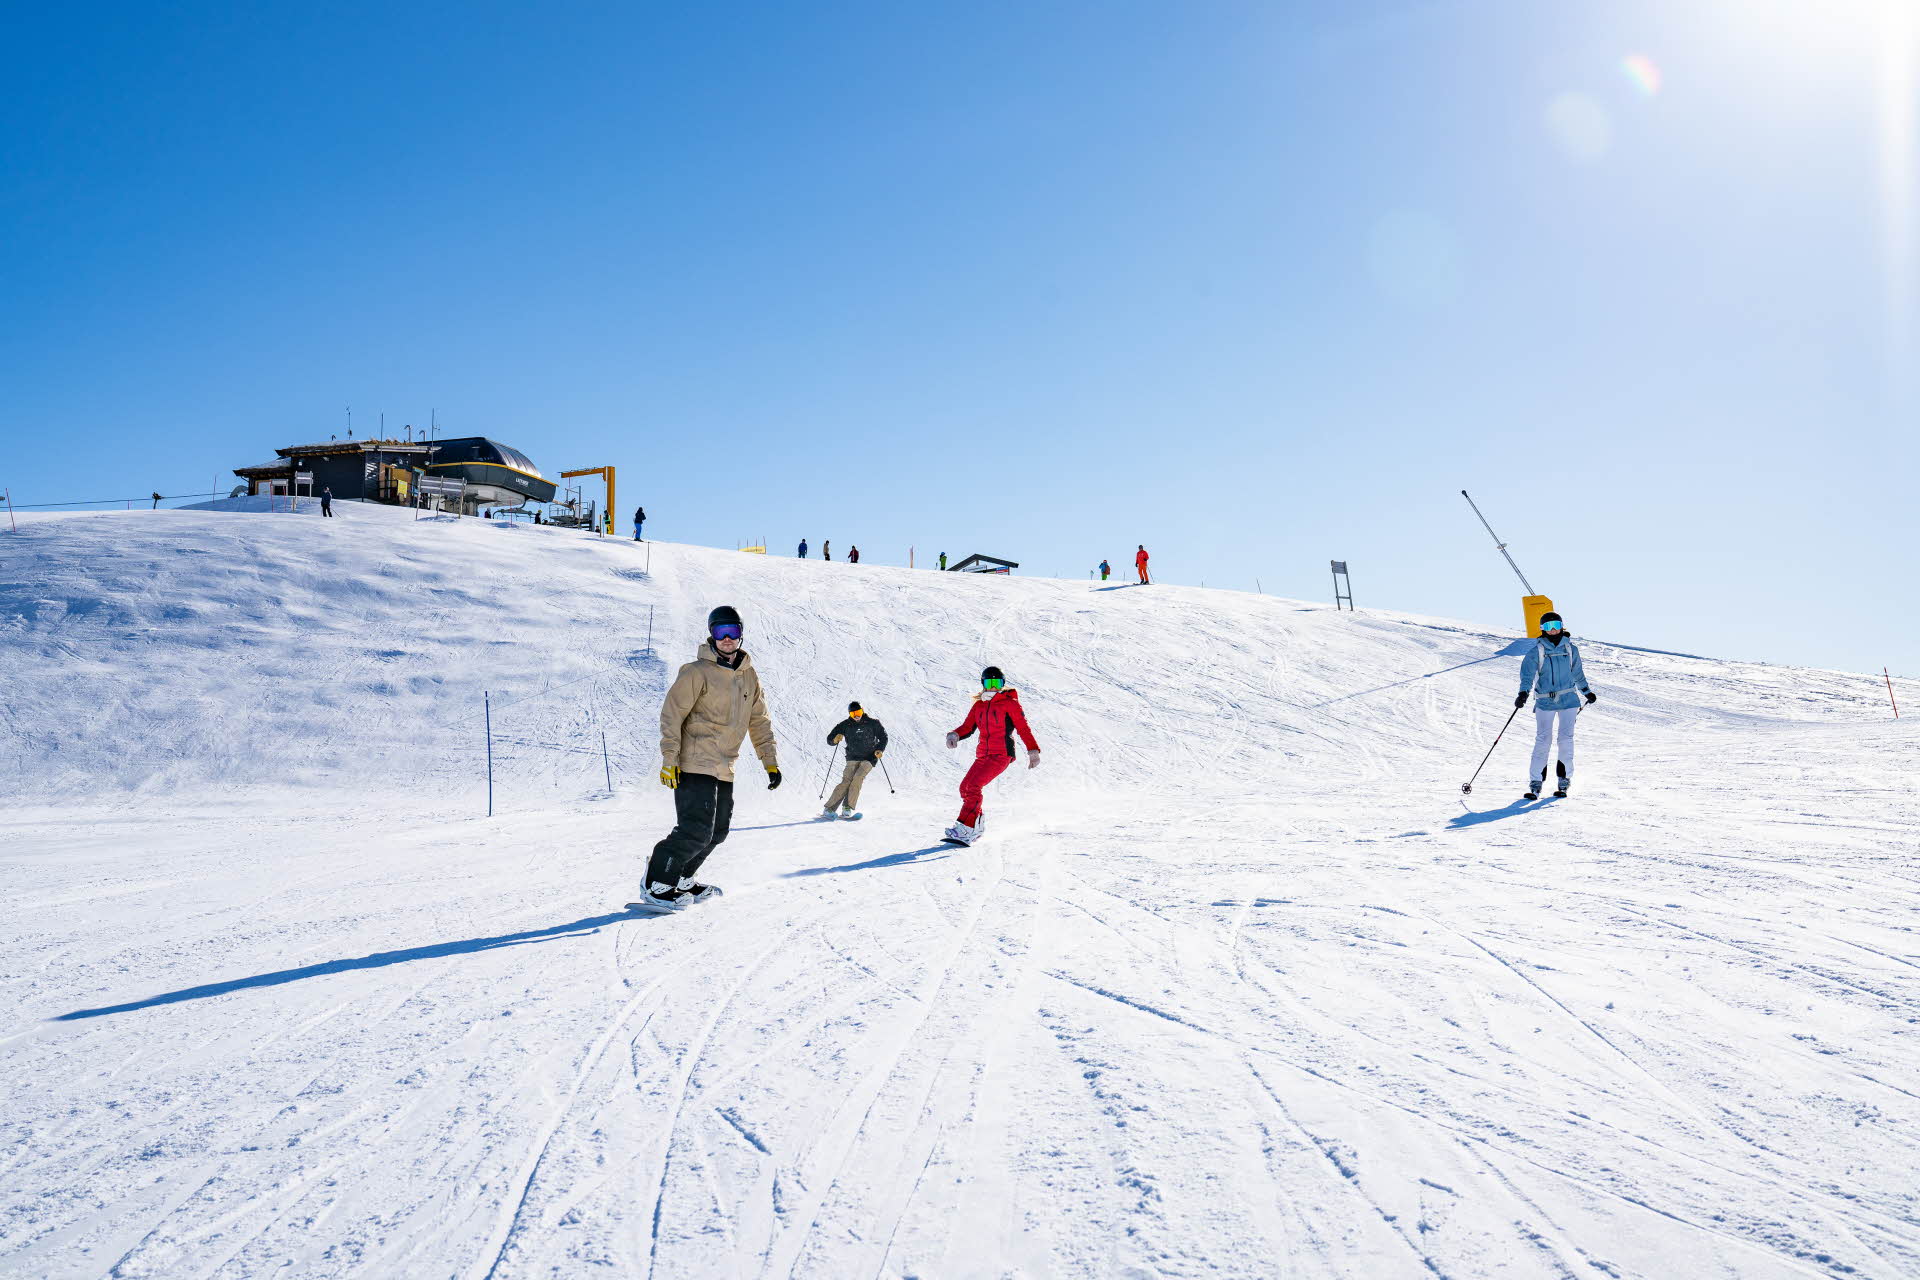 ミュルダレンのゲレンデでスキーやスノーボードをする人々。 